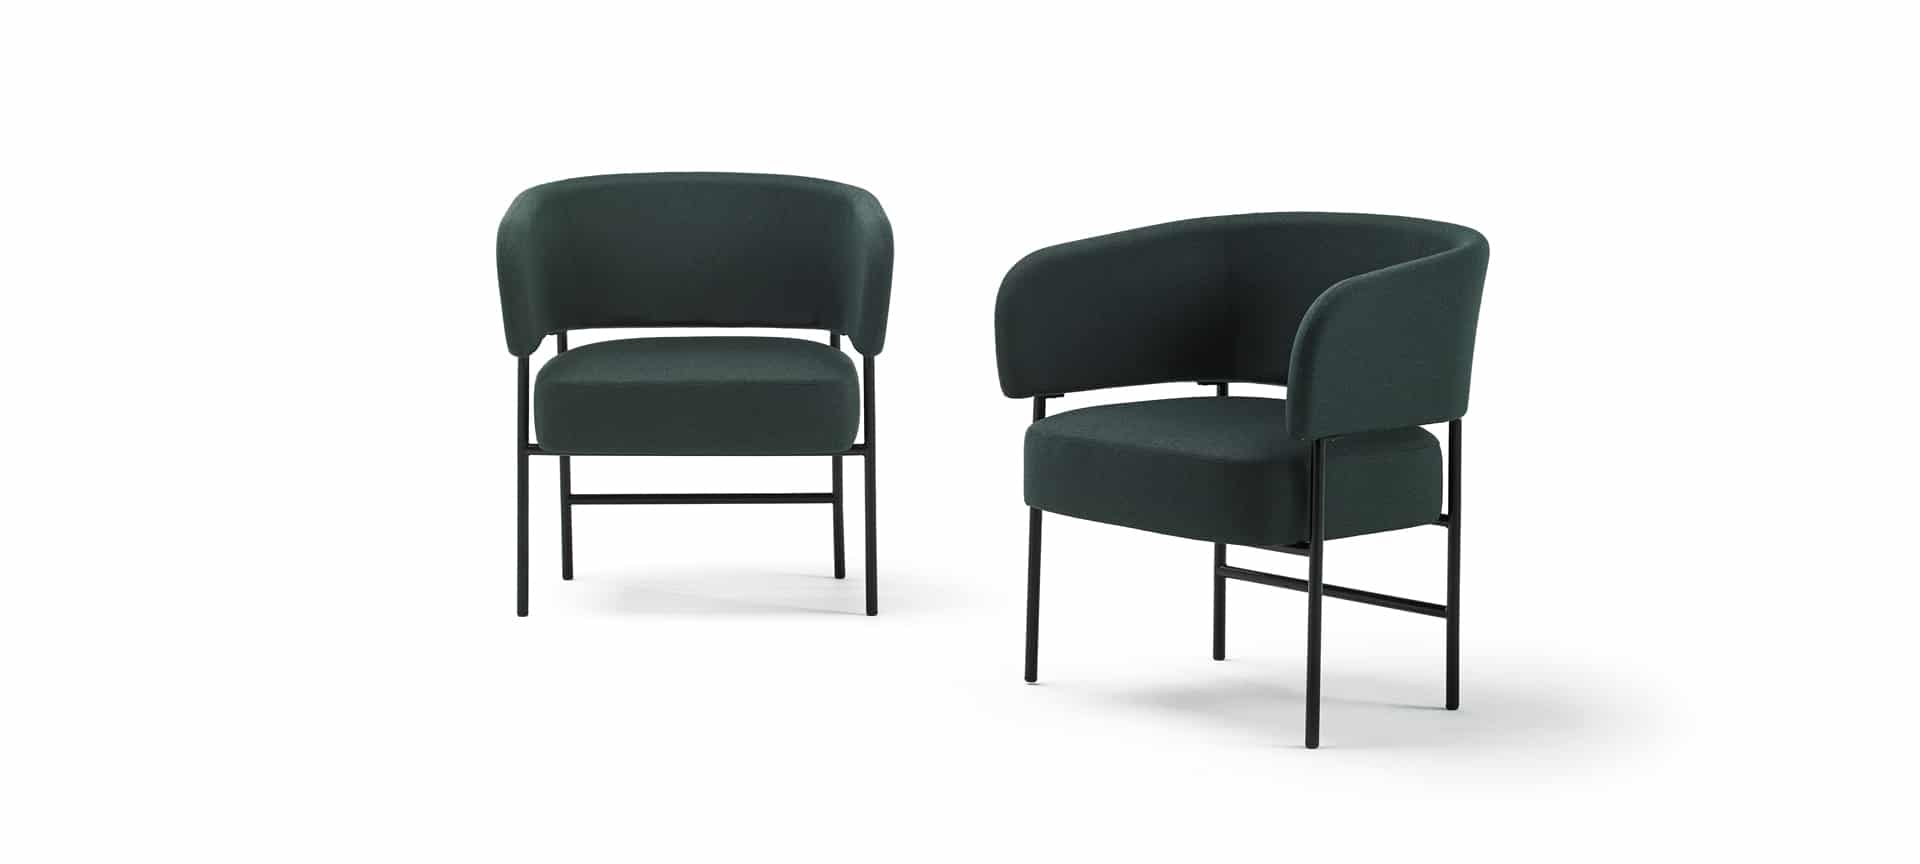 Butaca Easy Chair en el Hotel Casa Grande - Muebles de diseño - Blasco&Vila